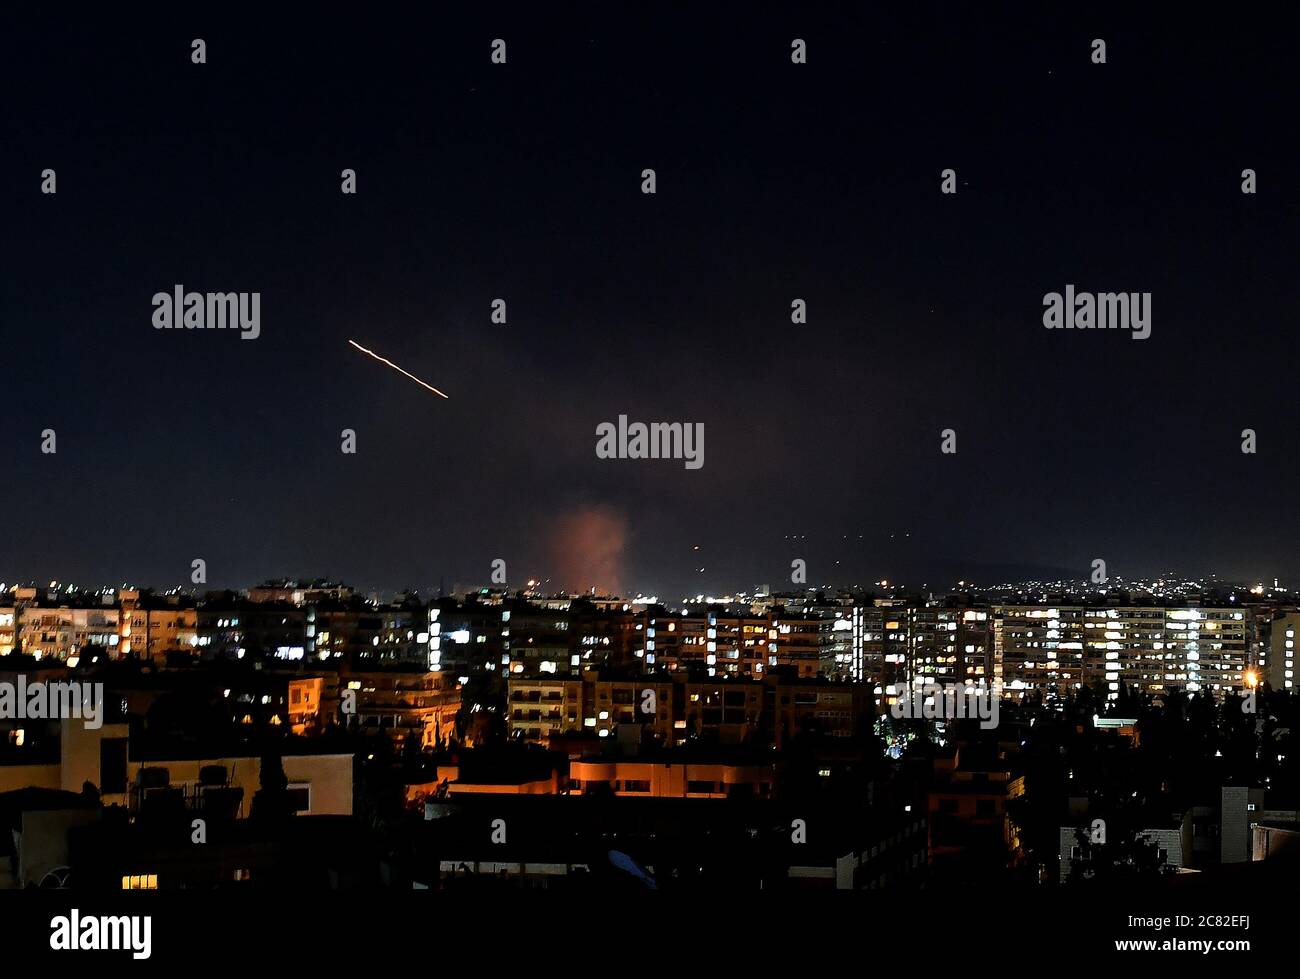 Damas, Syrie. 20 juillet 2020. Le missile de défense aérienne syrien est vu dans le ciel au-dessus de Damas, capitale de la Syrie, le 20 juillet 2020. Les défenses aériennes syriennes ont répondu lundi soir à une attaque de missiles israéliens sur la capitale Damas, a rapporté l'agence de presse nationale SANA. Crédit: Ammar Safarjalani/Xinhua/Alamy Live News Banque D'Images